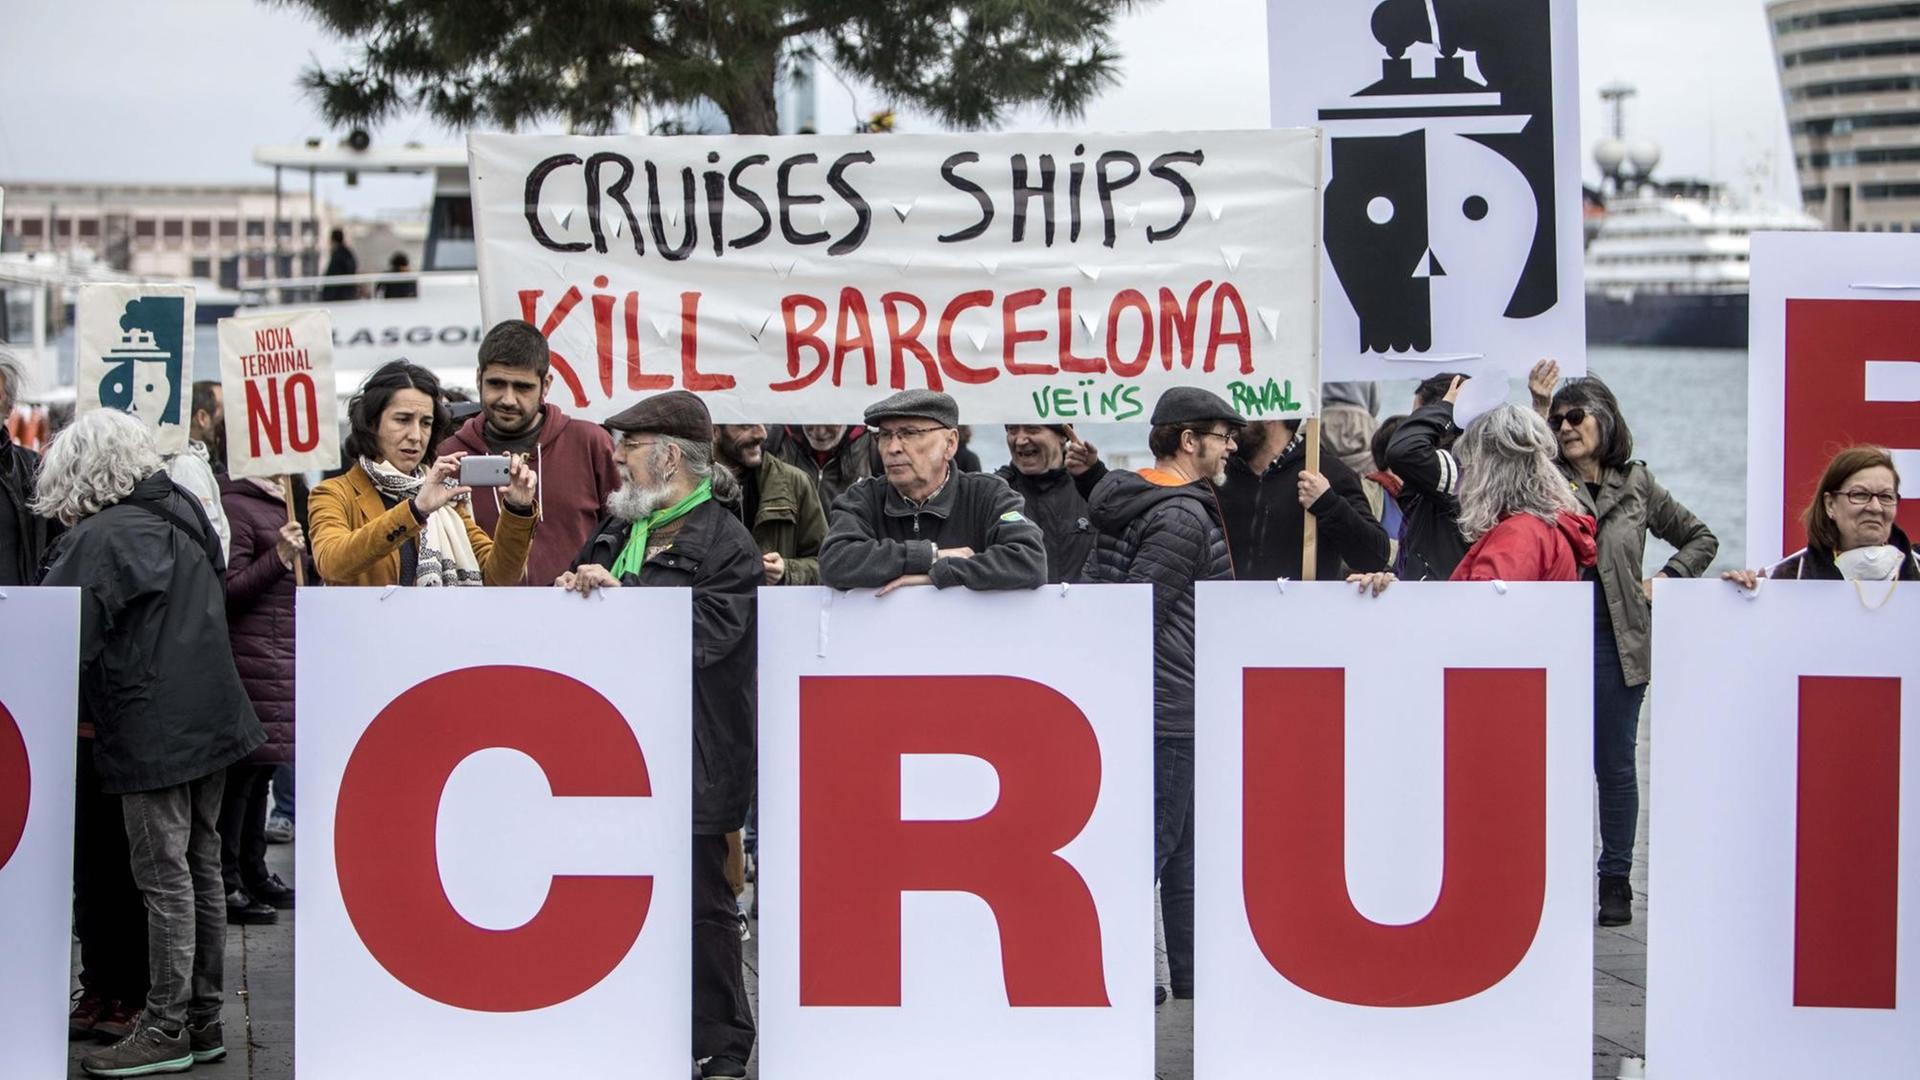 Demonstranten halten Banner hoch auf denen steht, dass die Kreuzfahrtschiffe "Barcelona töten".